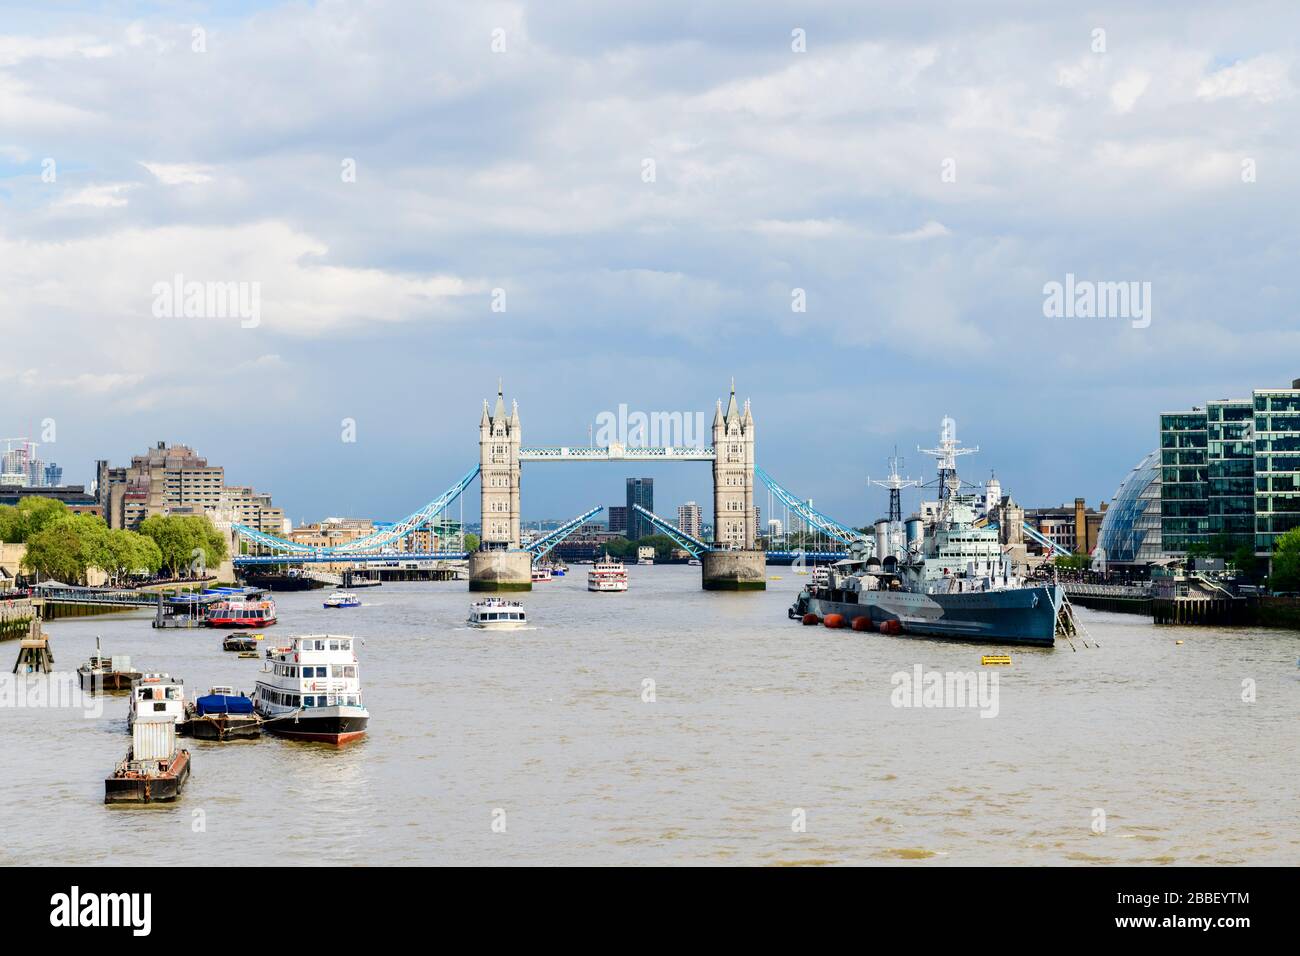 Die Tower Bridge öffnet für ein Kreuzfahrtschiff in London, England. Die "HMS Belfast" befindet sich auf der rechten Seite. Stockfoto